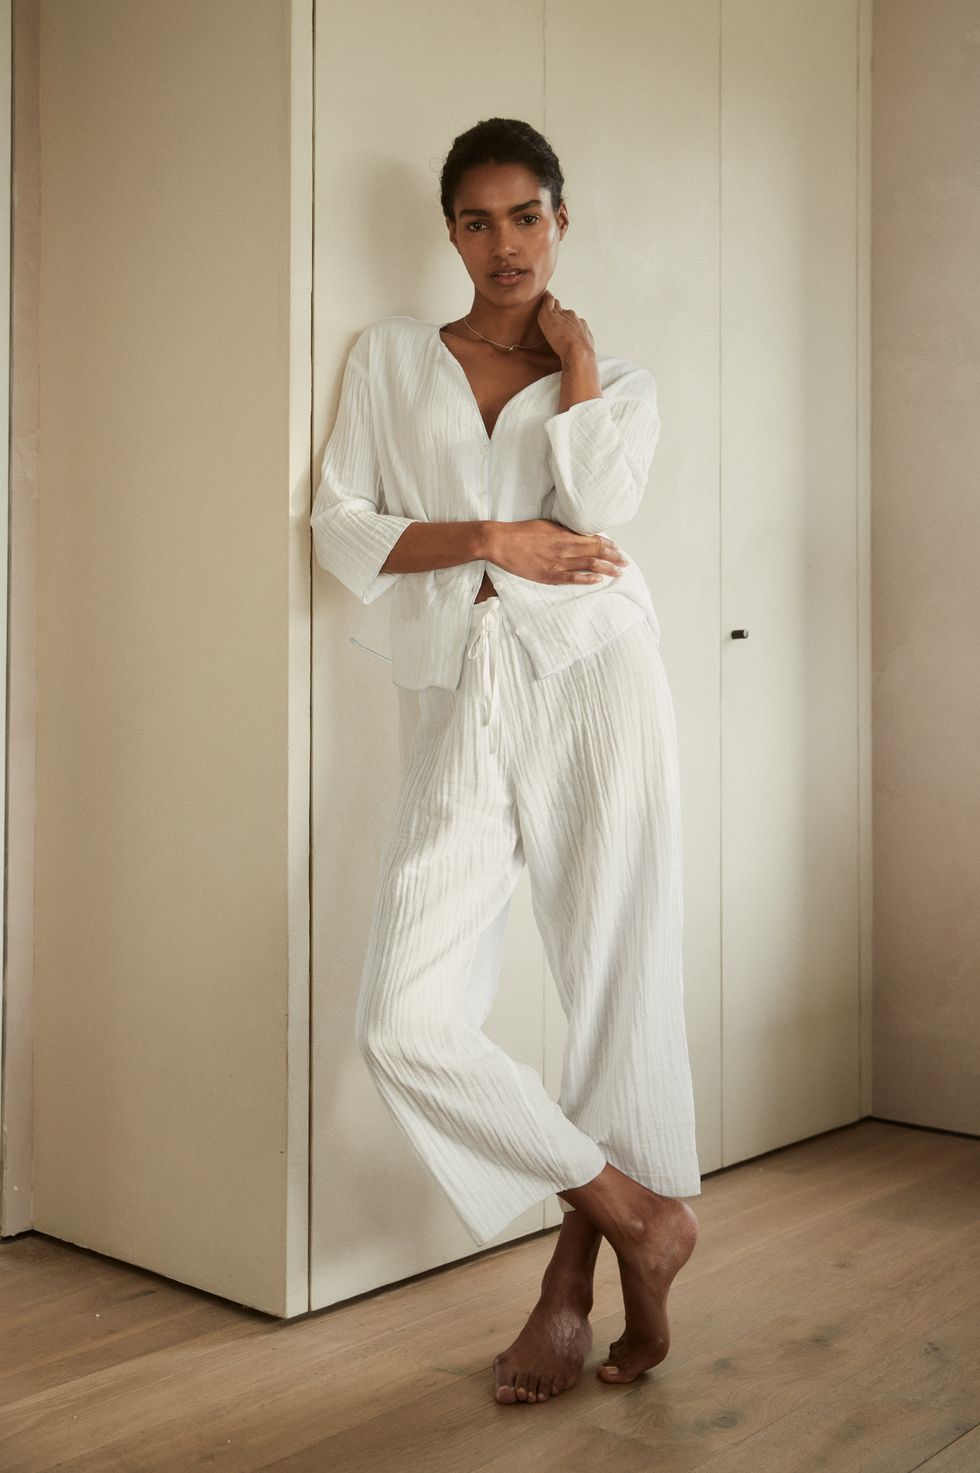 Best pyjama brands – our guide to stylish sleepwear